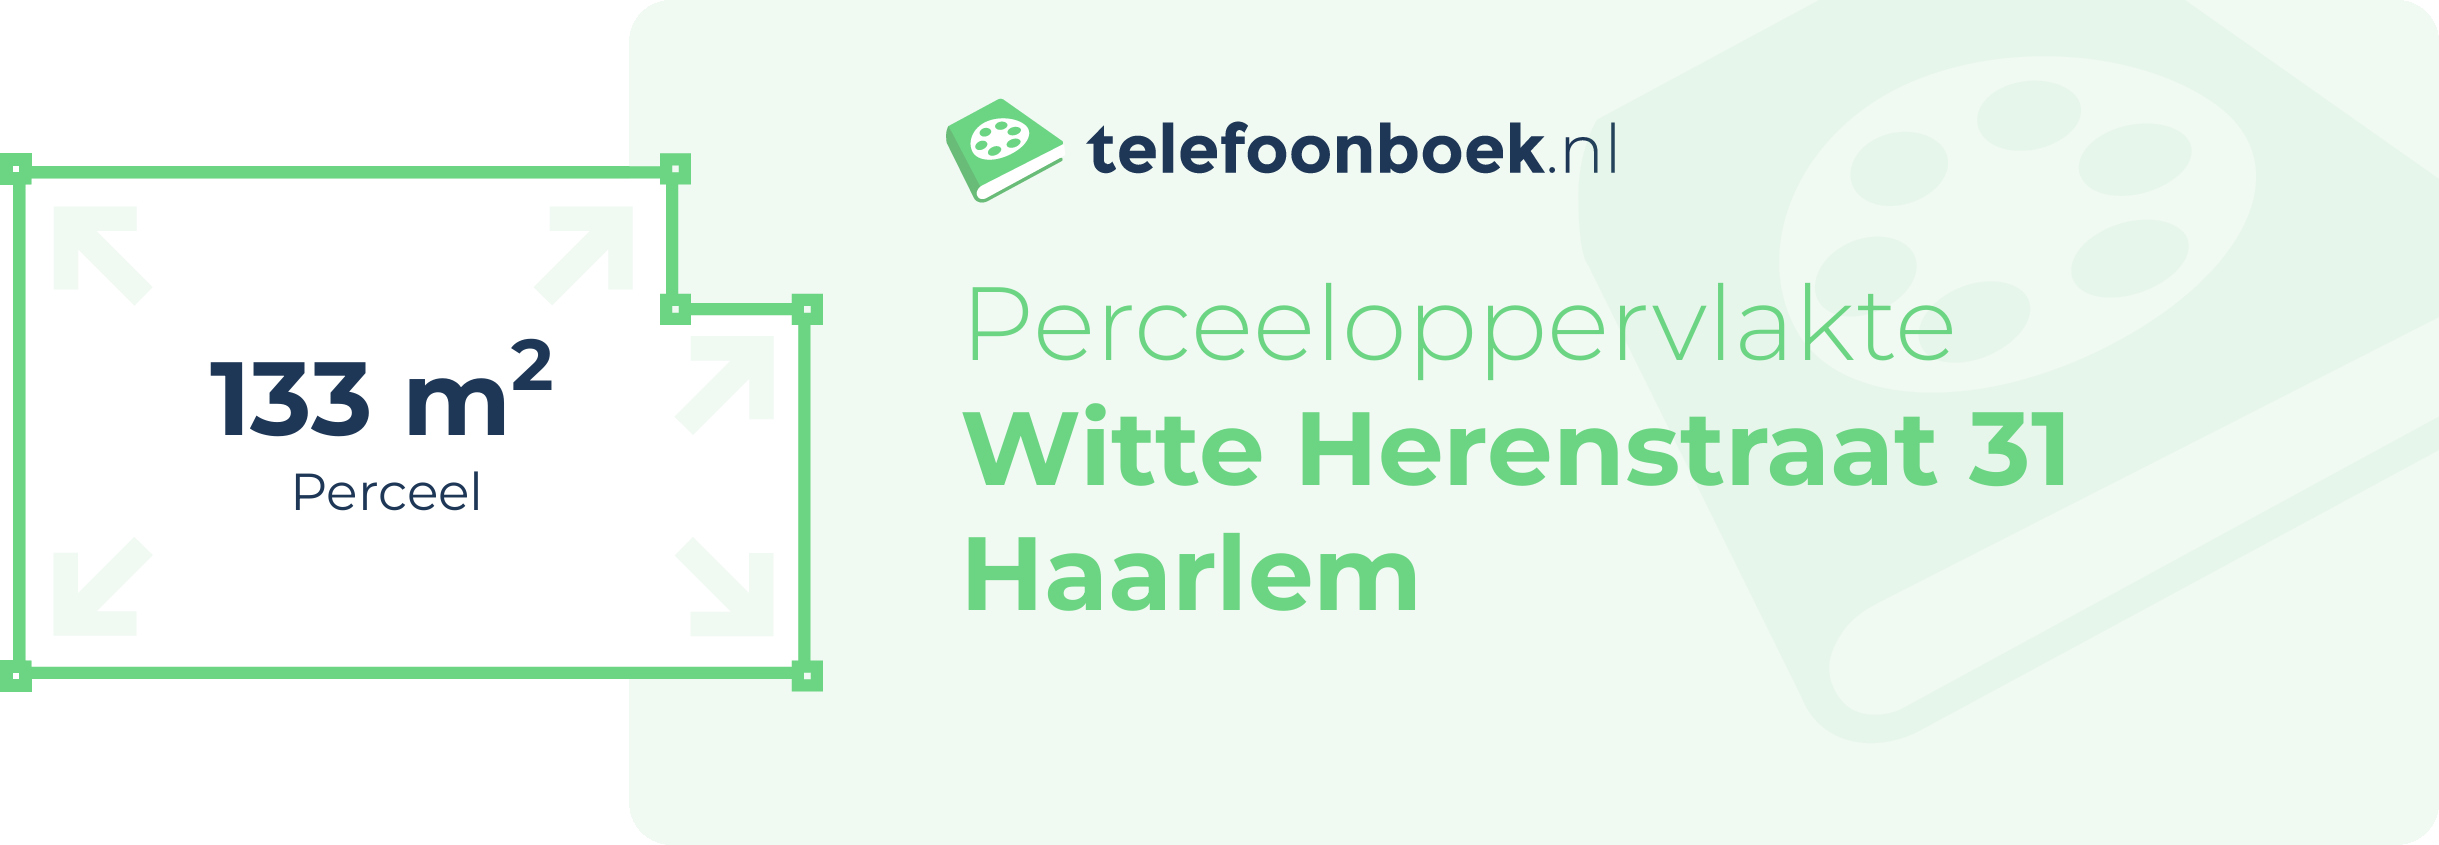 Perceeloppervlakte Witte Herenstraat 31 Haarlem